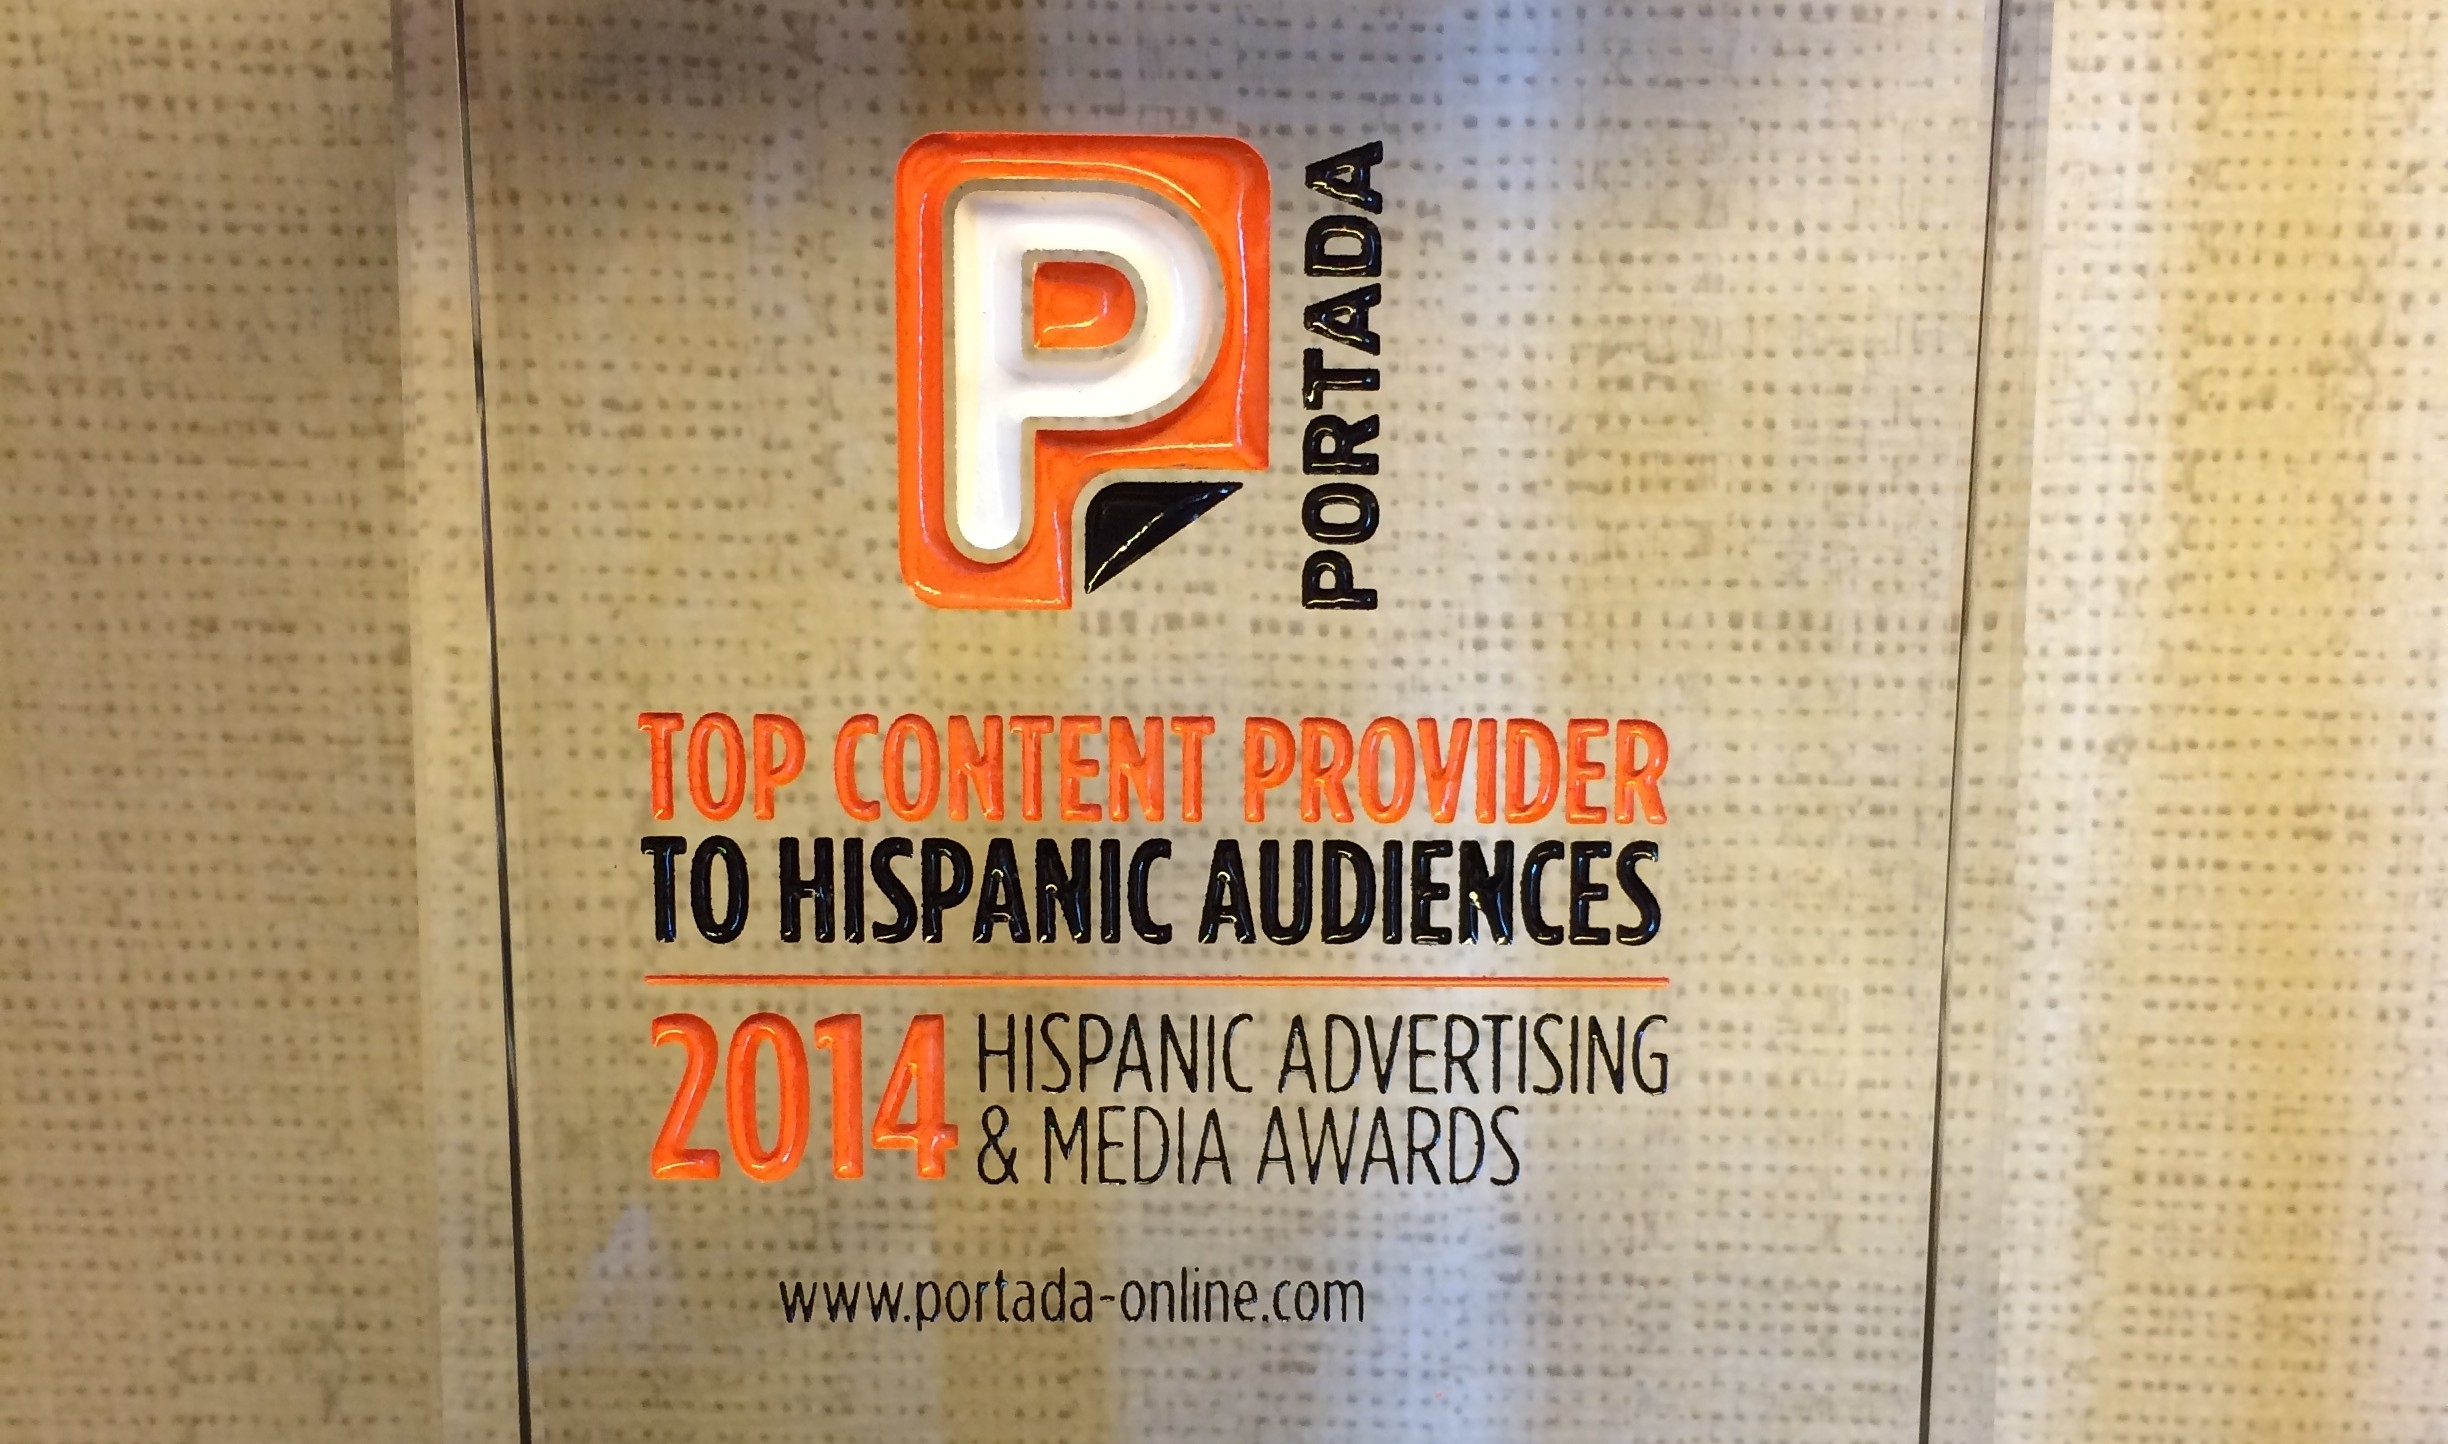 A Brand as a Top Content Provider to Hispanics? Portada Says “Sí” to Días Grandiosos con Kellogg’s